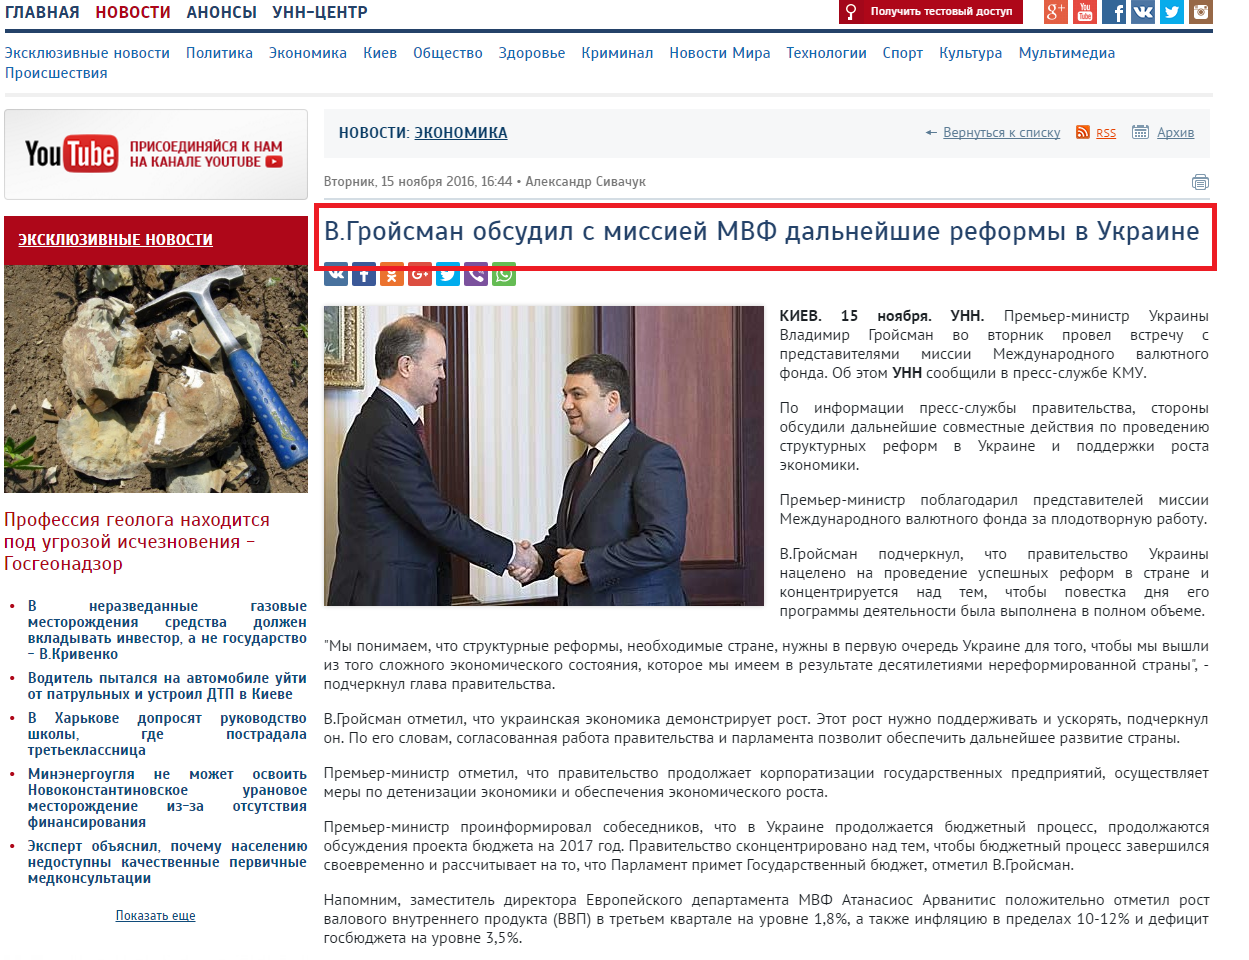 http://www.unn.com.ua/ru/news/1619012-v-groysman-obgovoriv-z-misiyu-mvf-podalshi-reformi-v-ukrayini